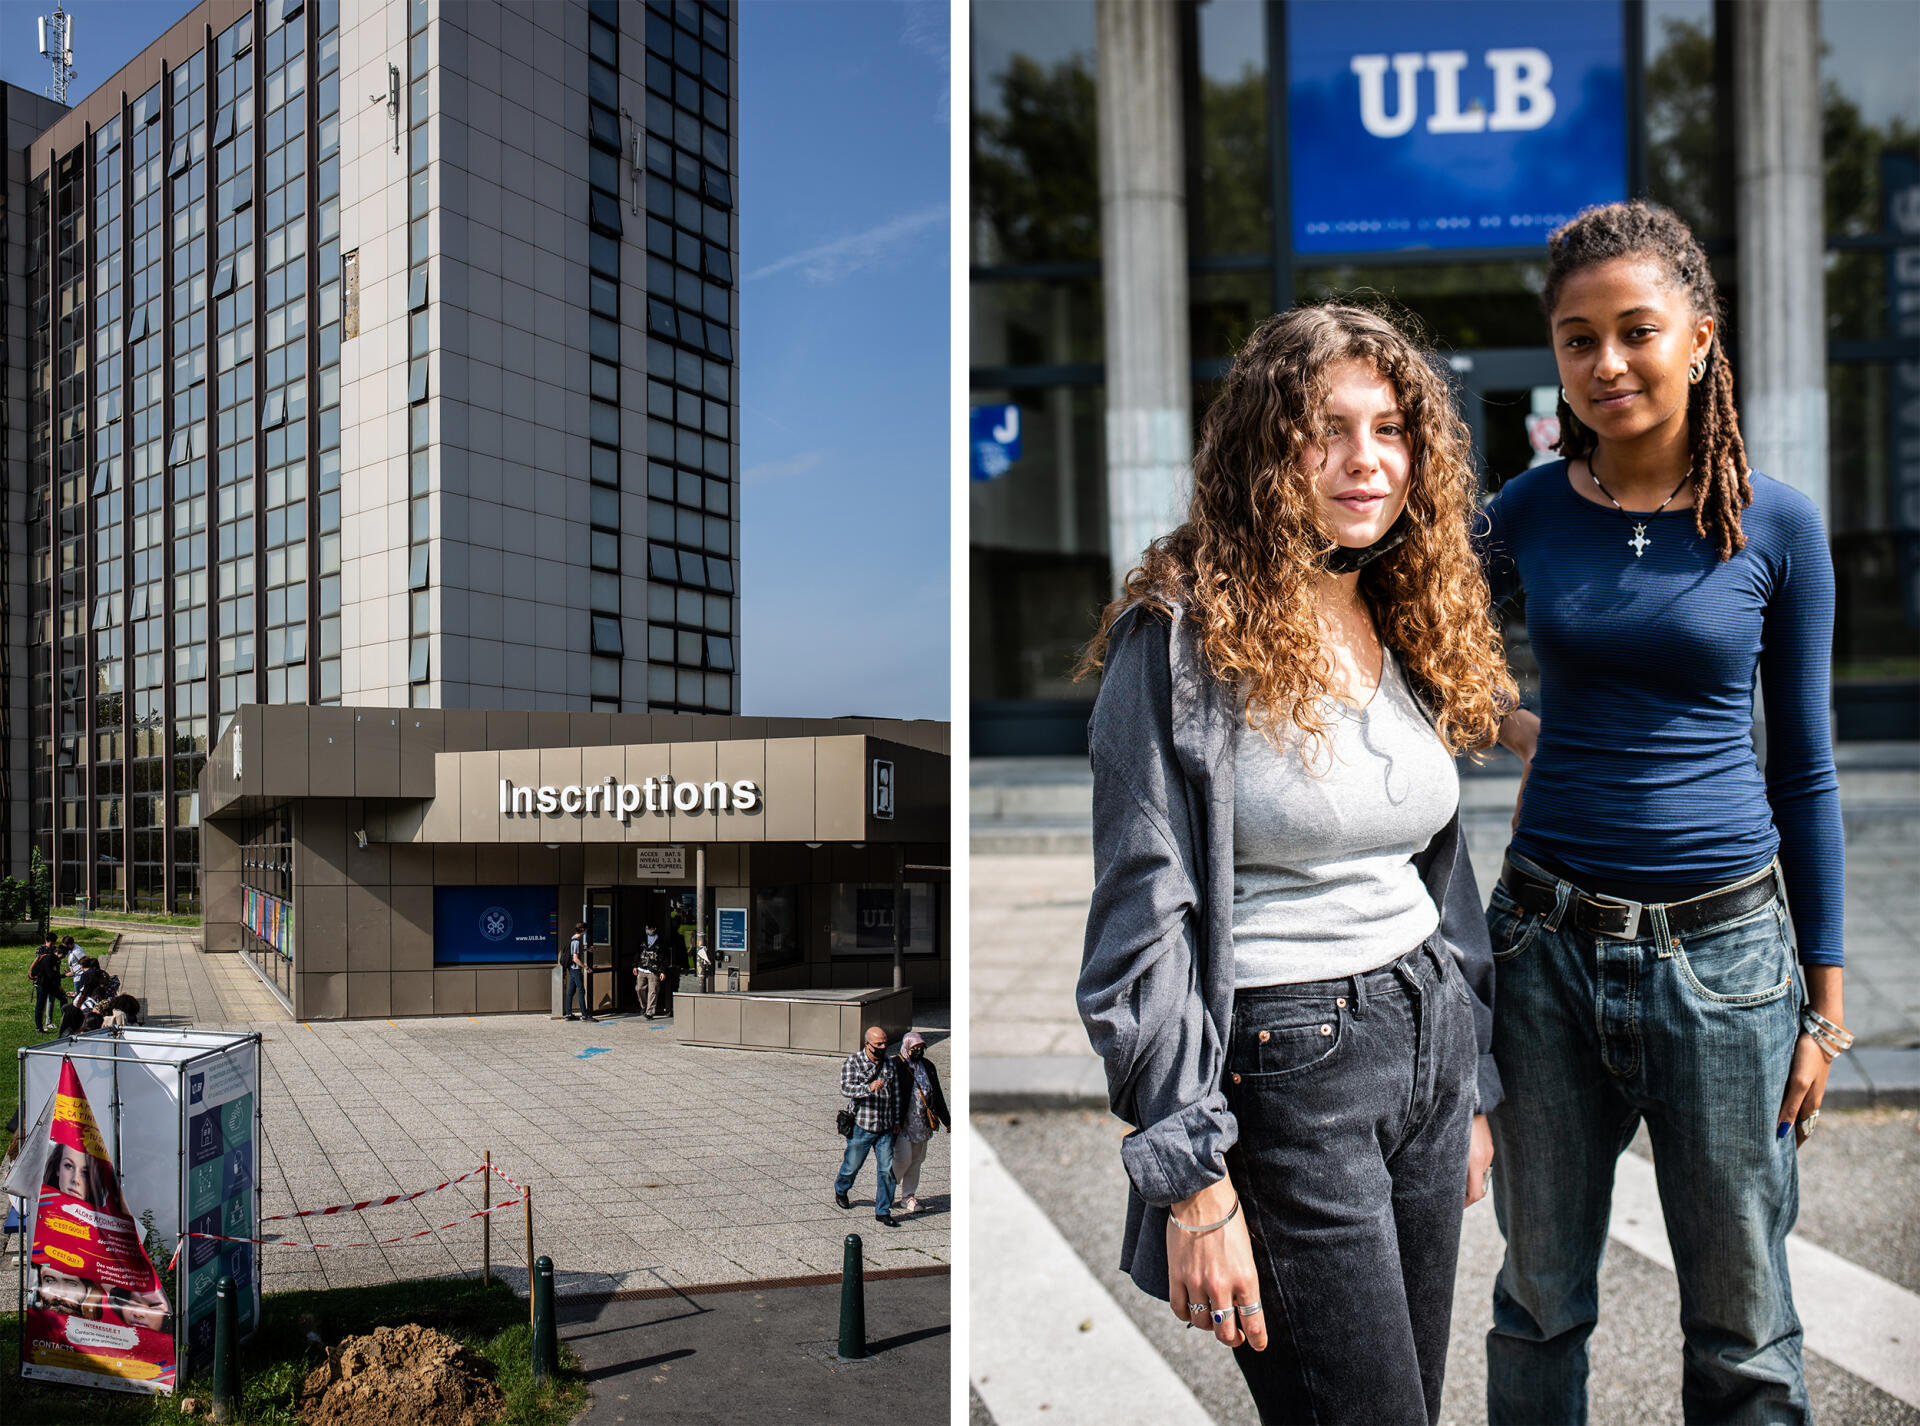 Comme 12 % des étudiants qui s’inscrivent à l’ULB, Manon Biseau (à gauche) et Tilao Tchiombiano viennent de France pour suivre des études de science politique à Bruxelles, le 13 septembre 2021.